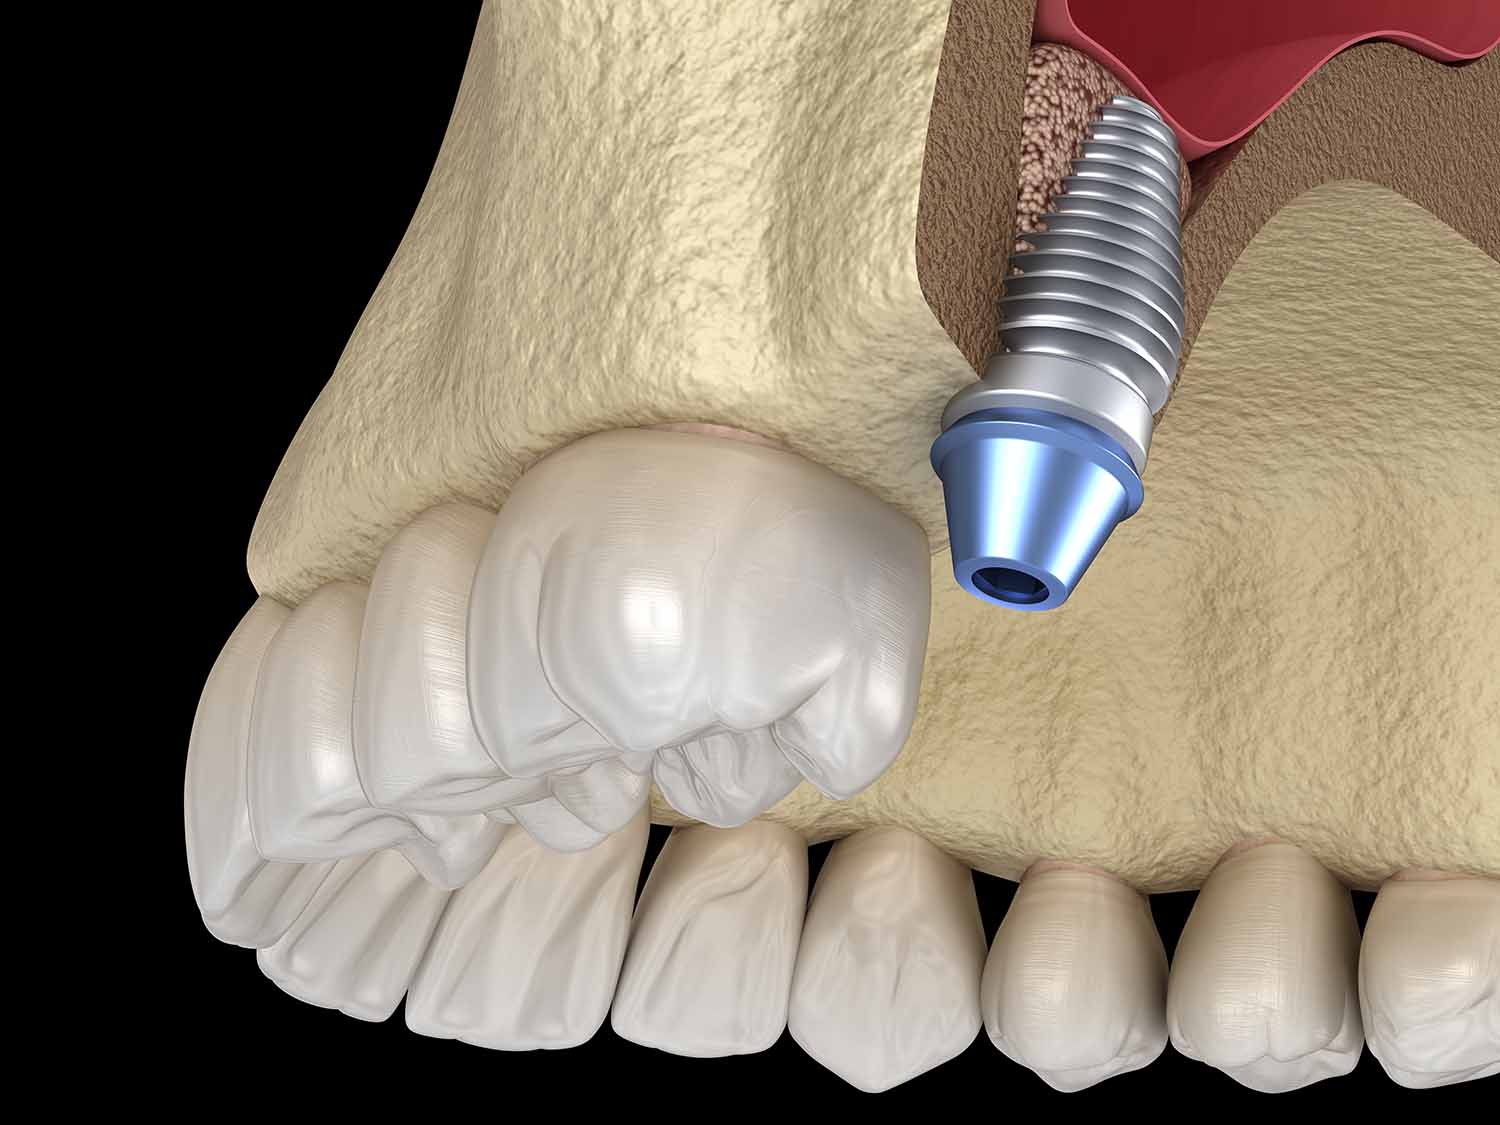 Корень зуба в гайморовой пазухе - цена операции по удалению